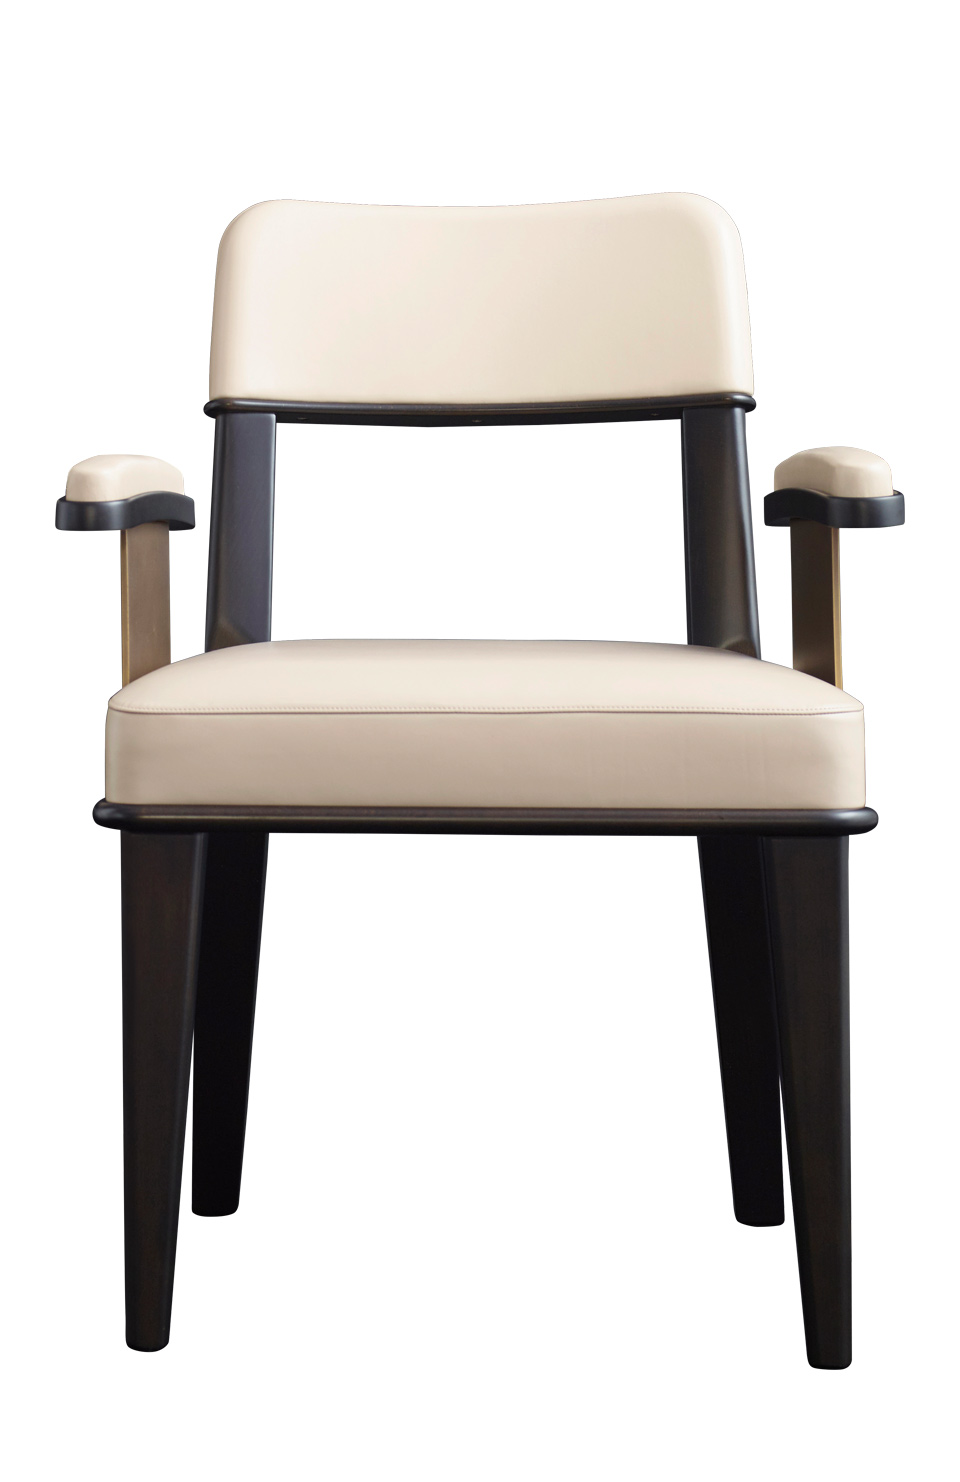 „Vespertine“ ist ein Esszimmerstuhl aus Holz mit Sitzfläche und Rückenteil in Leder, der mit oder ohne Armlehnen, die mit Bronzedetails verziert sind, erhältlich ist, aus dem Katalog von Promemoria | Promemoria